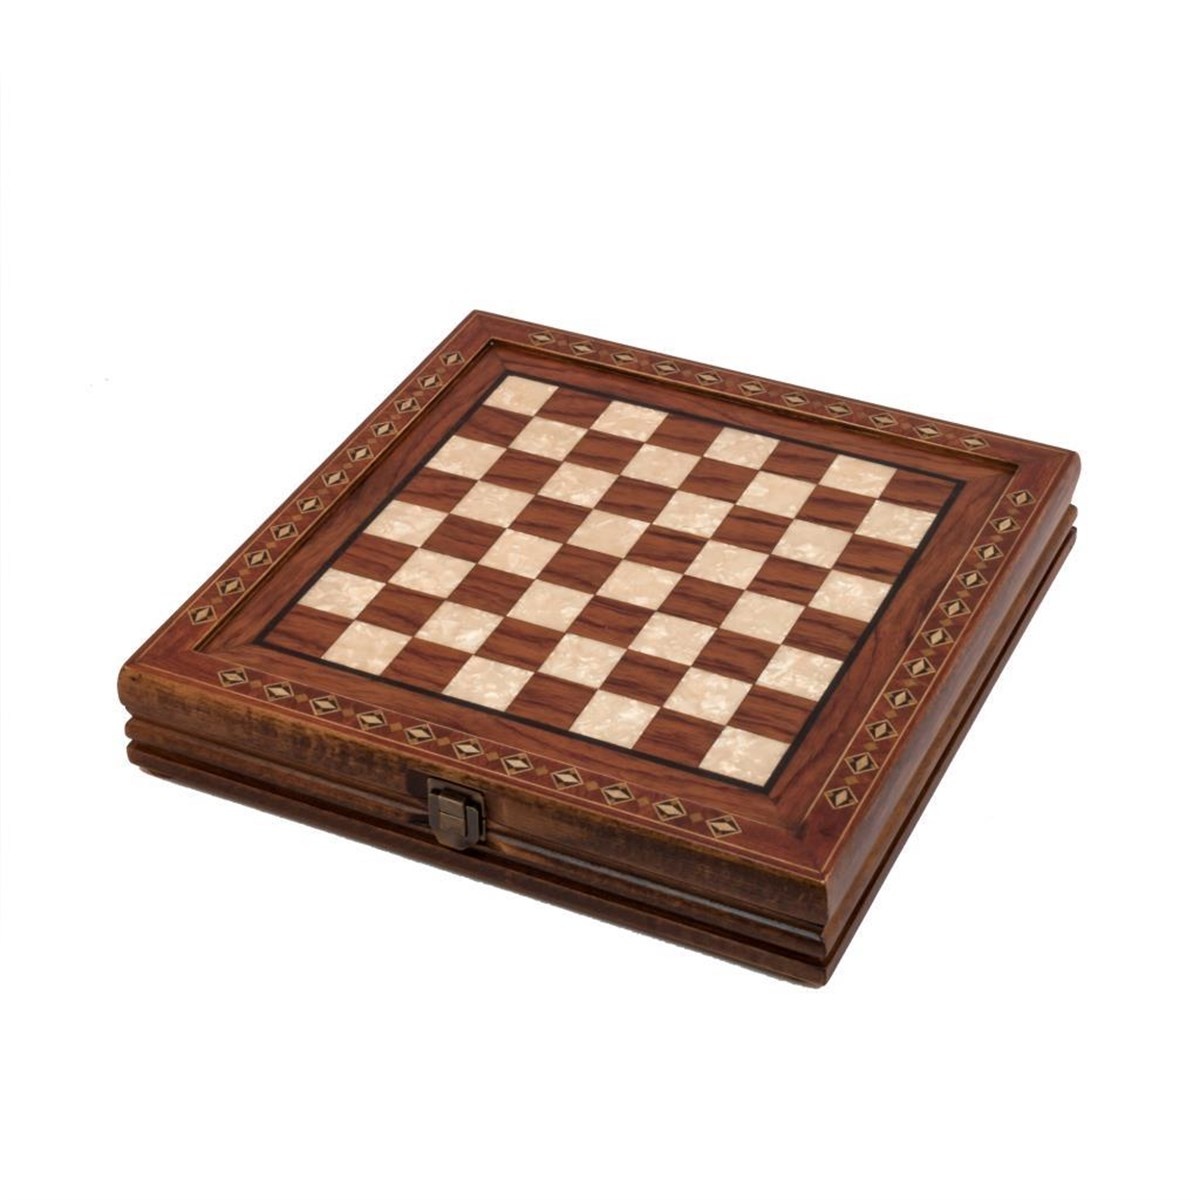 Helena Wood Art Handgemaakte houten schaakbord met opbergsysteem - Metalen Schaakstukken - Luxe uitgave - Schaakspel - Schaakset - Schaken - Chess - 30,5 x 30,5 cm